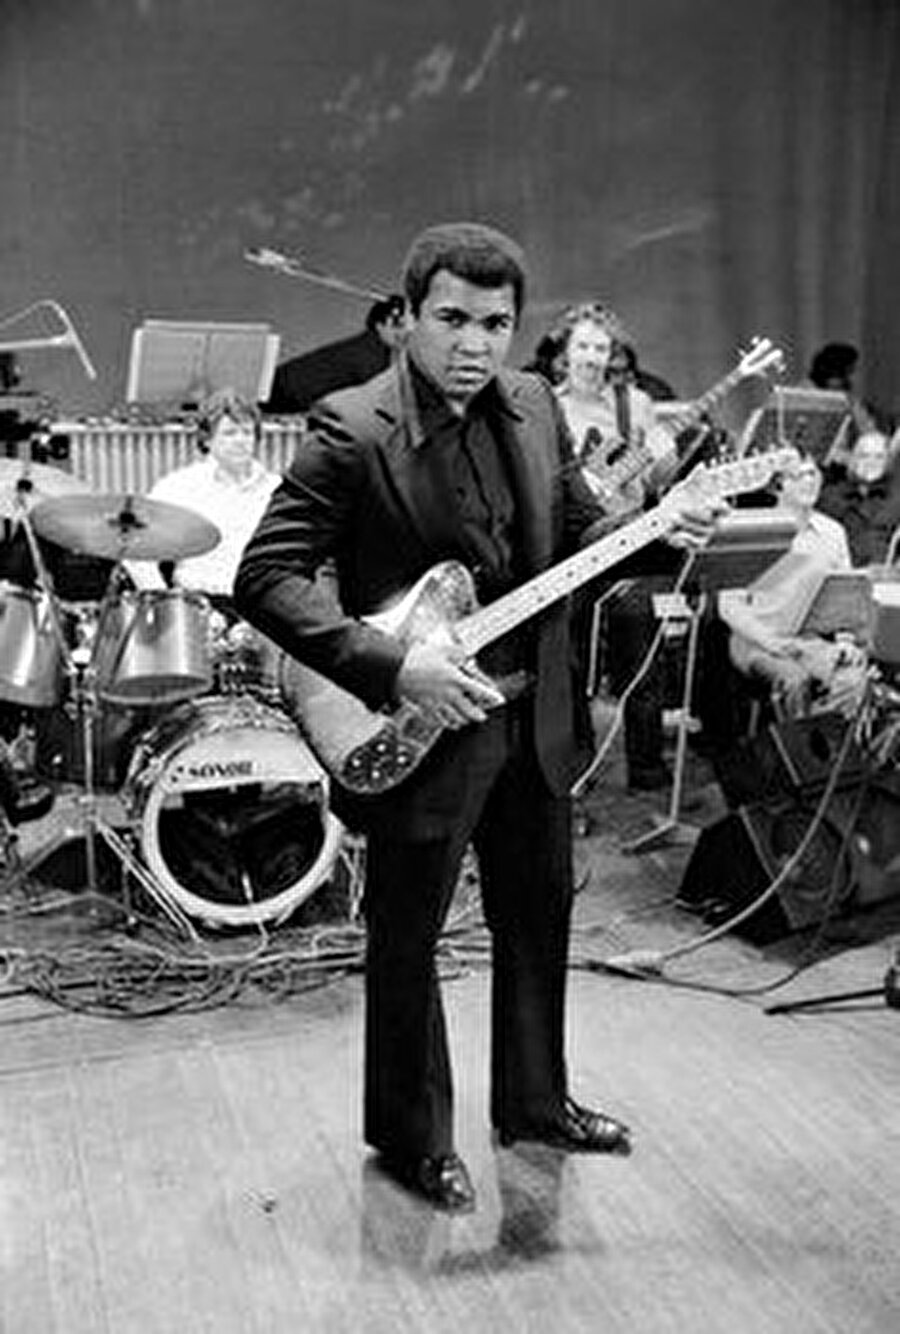 Şarkı söylemeyi çok seviyordu

                                    
                                    
                                    
                                    Muhammed Ali, gençliğinde müzik ve illüzyonla da ilgilendi. Muhammed Ali, Müslüman olduktan sonra müziğe devam etti ancak illüzyon yapmadı.
                                
                                
                                
                                